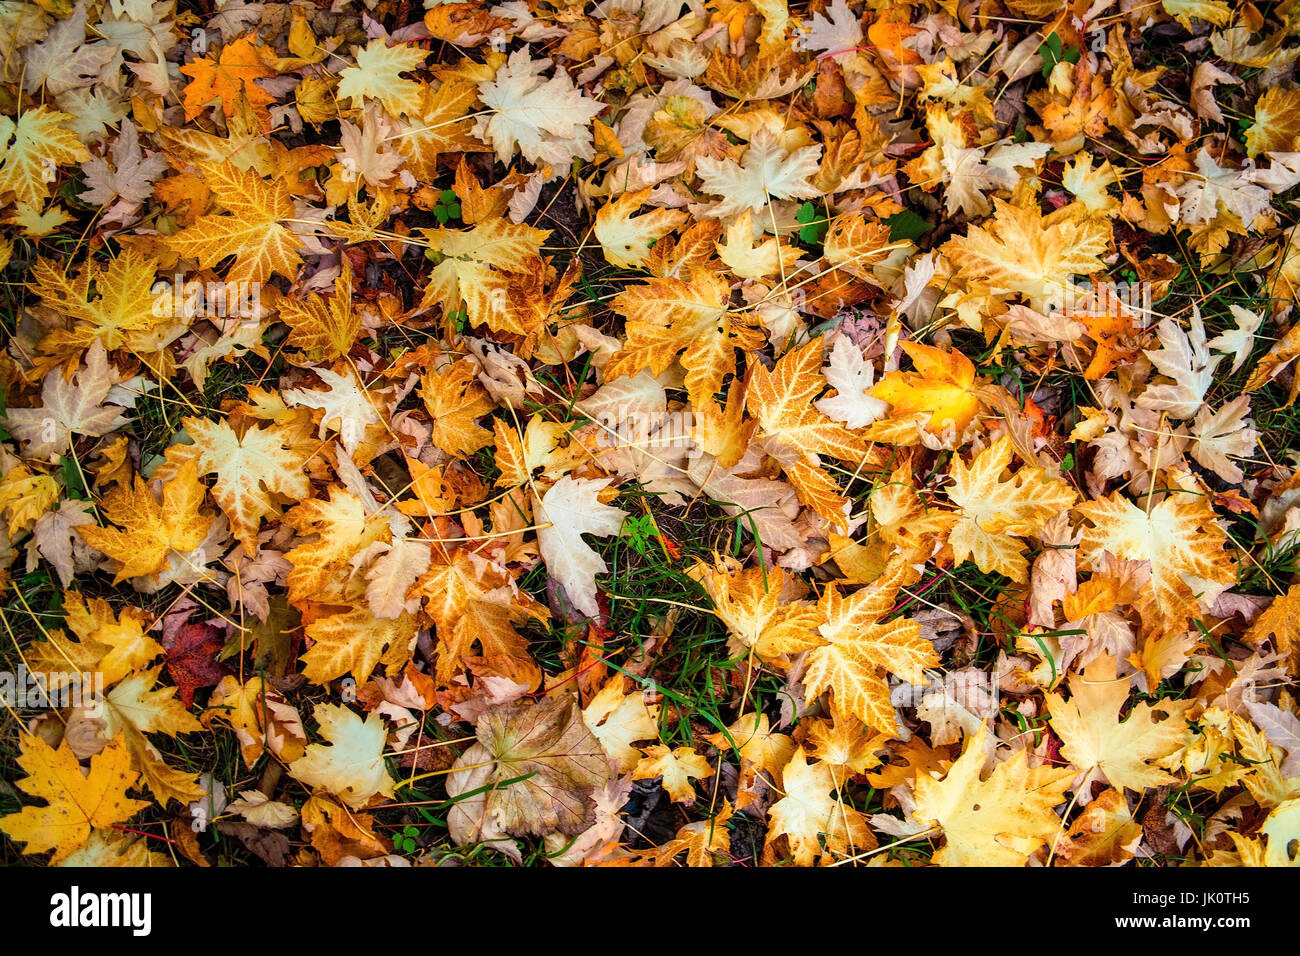 Foglie di acero sul terreno dopo la caduta autunnale delle foglie, ahornblaetter am Boden nach dem laubfall herbstlichen Foto Stock